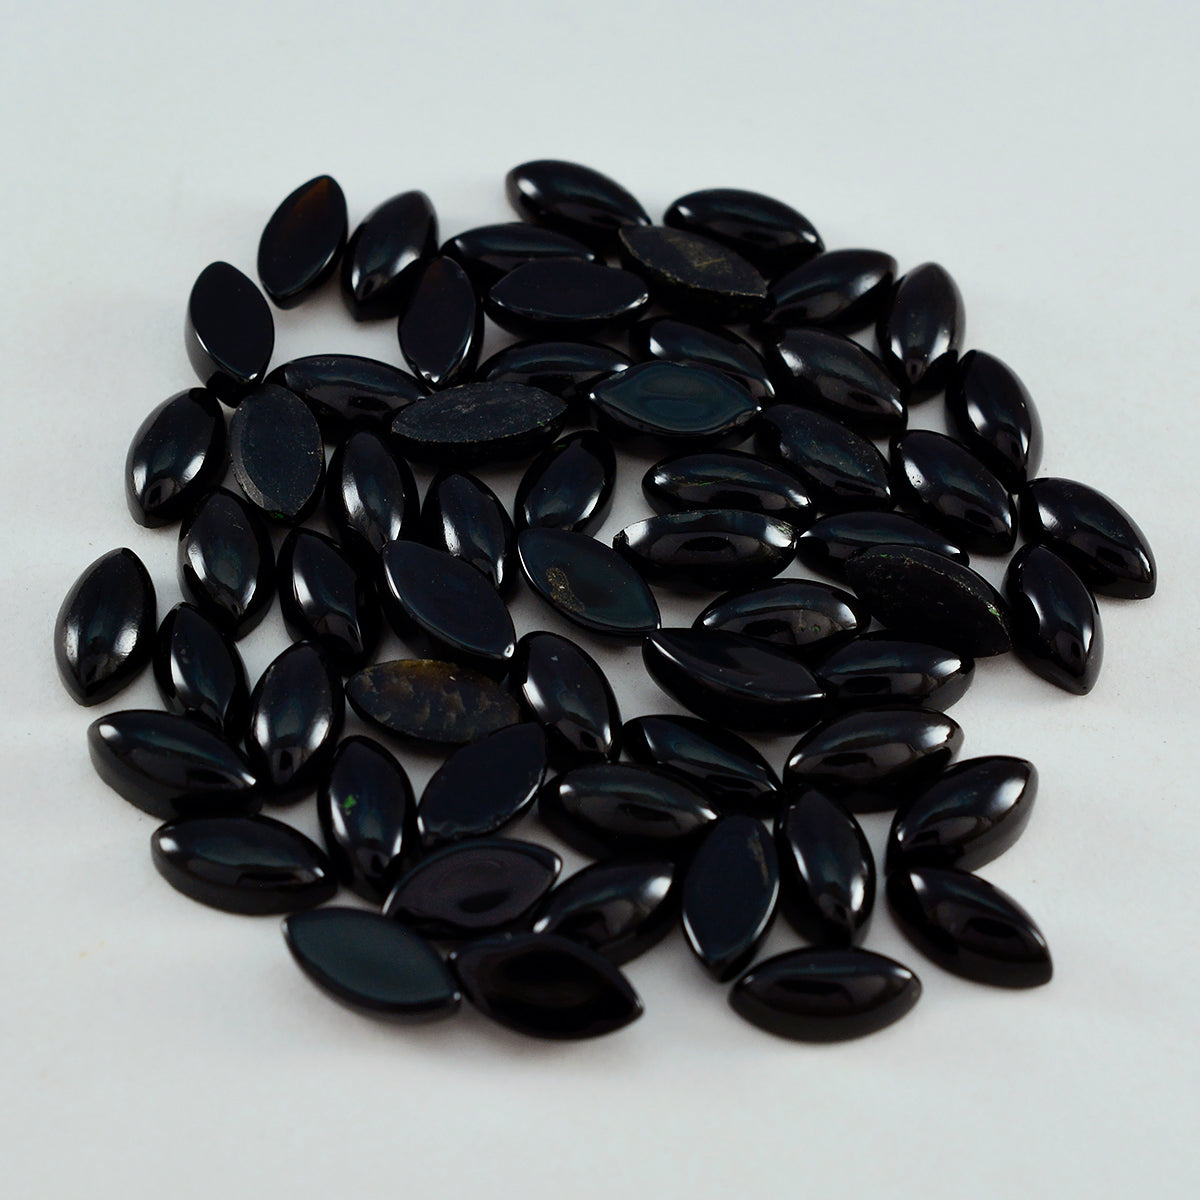 Riyogems 1 Stück schwarzer Onyx-Cabochon, 3 x 6 mm, Marquise-Form, AAA-Qualität, loser Edelstein